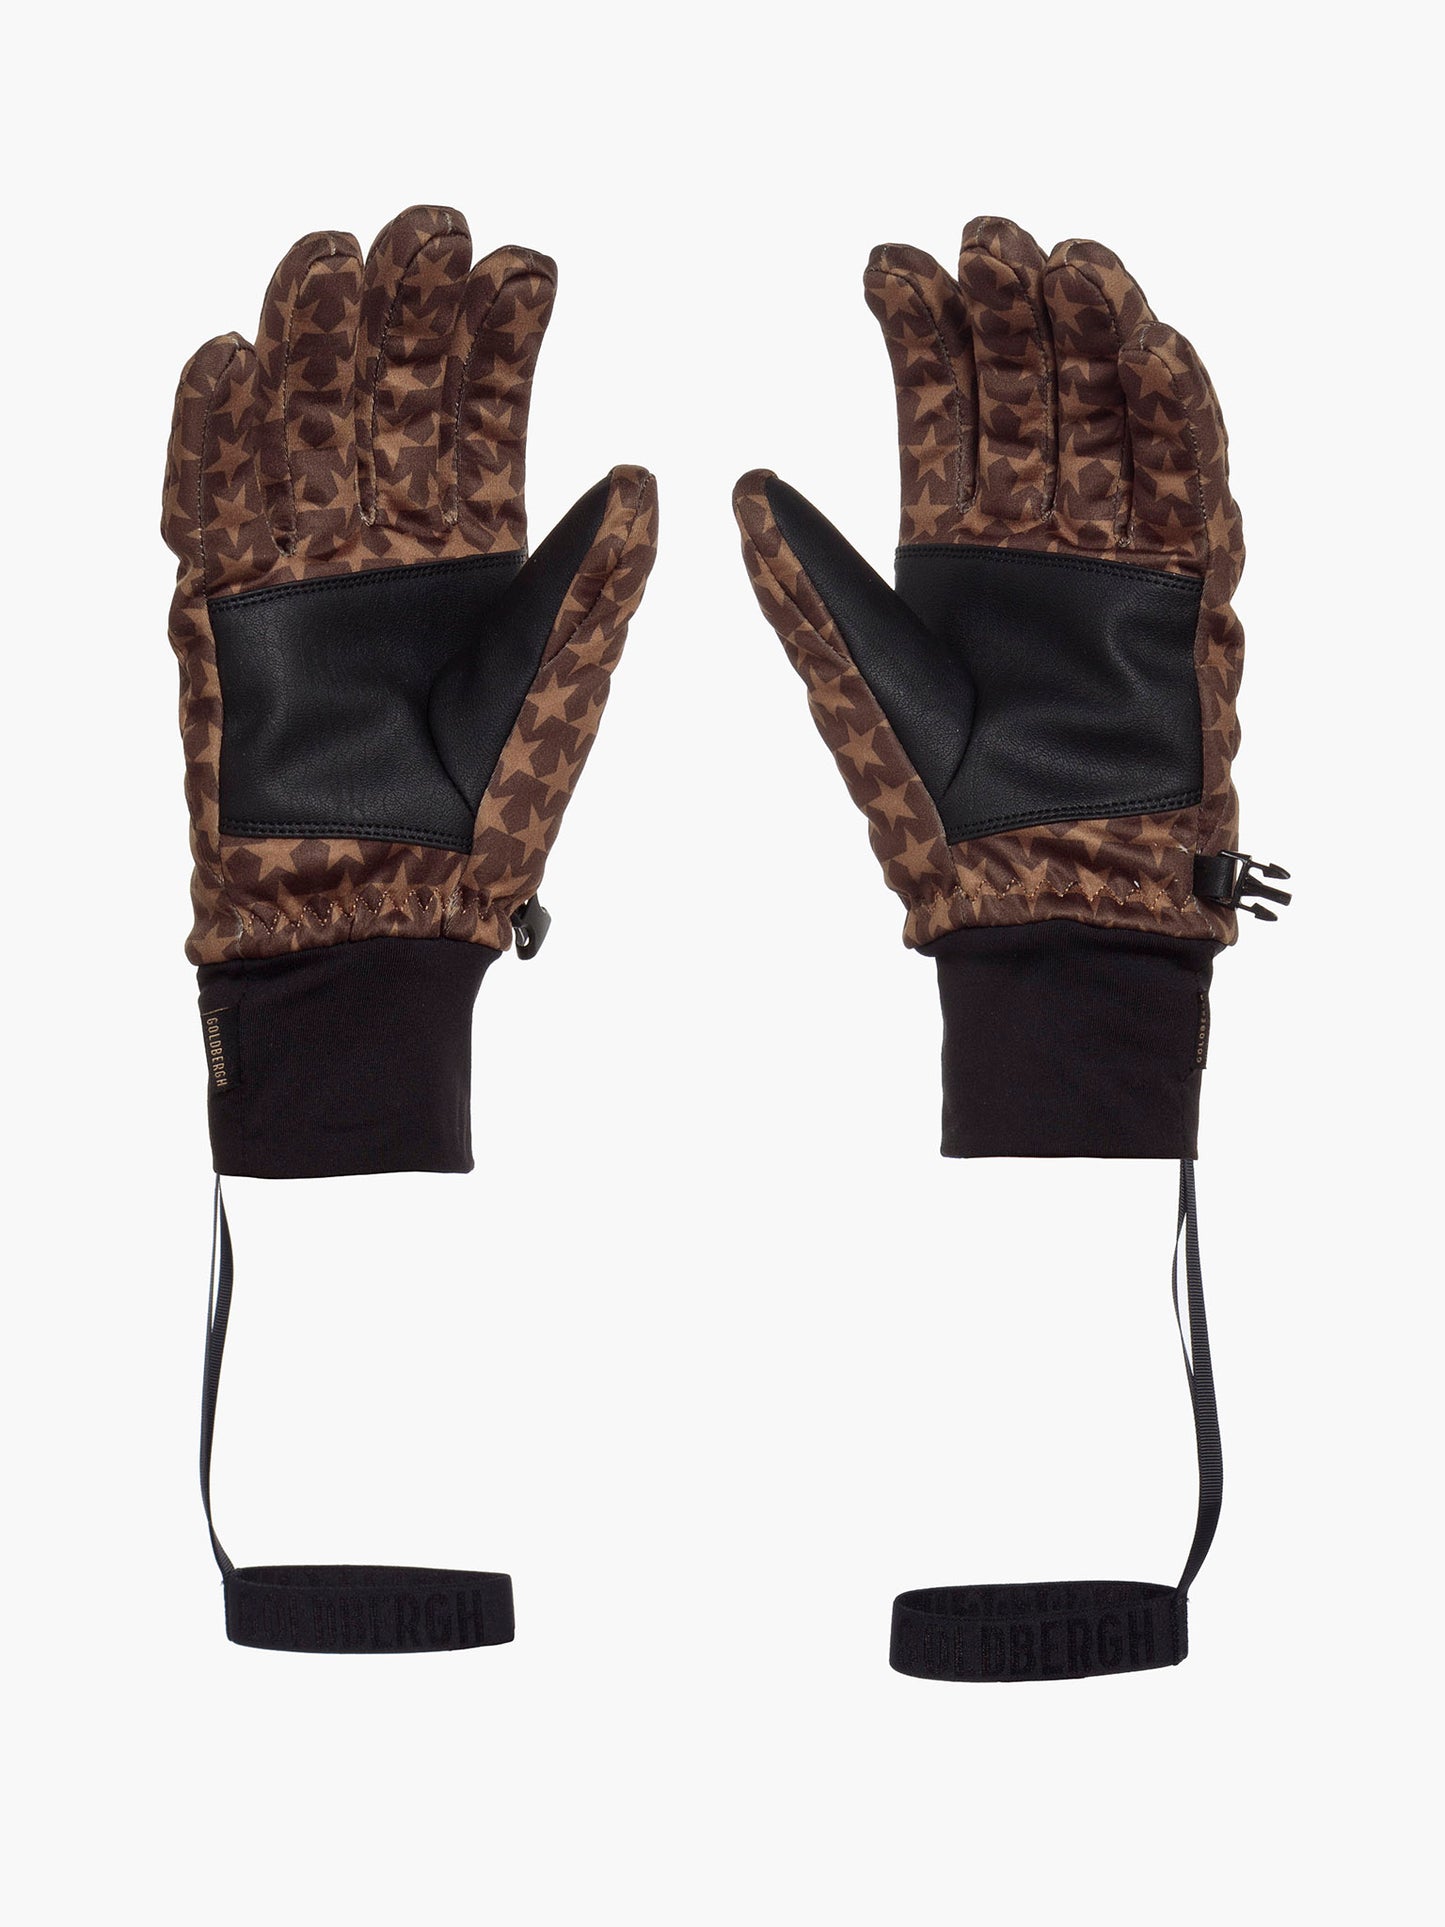 POLARIS gloves